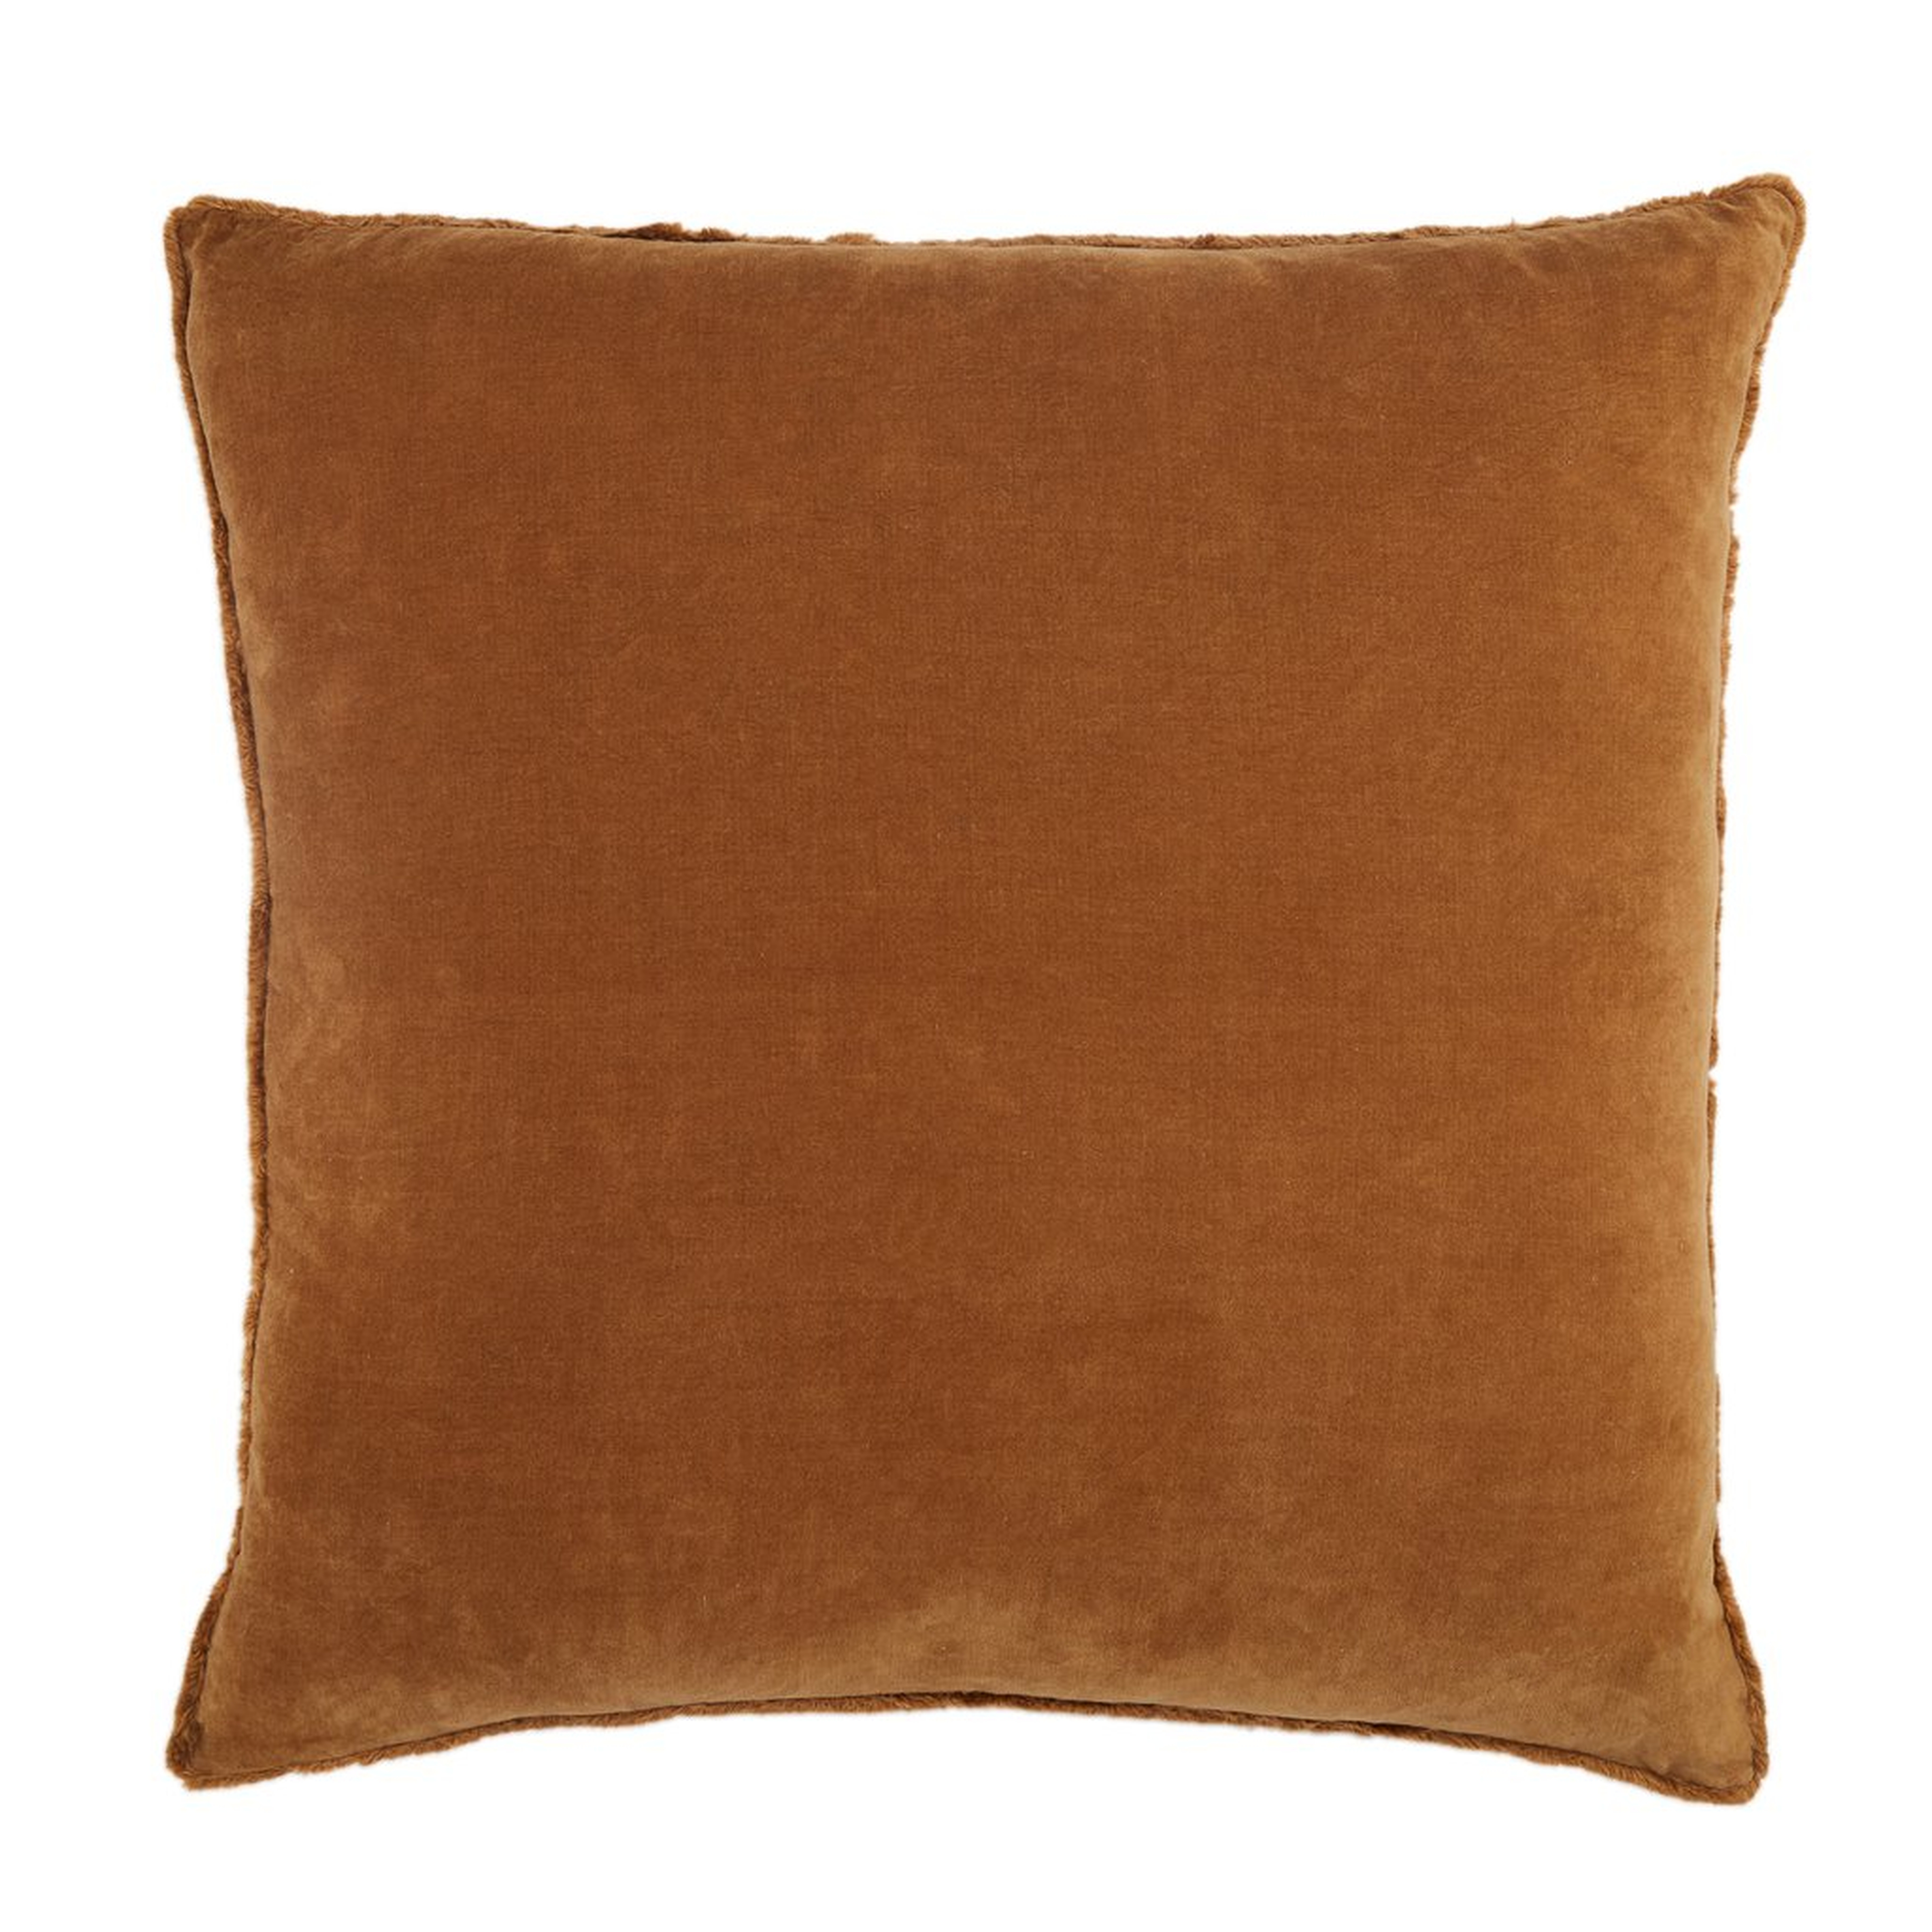 Lund Pillow, Chestnut, 26" x 26" - Haldin